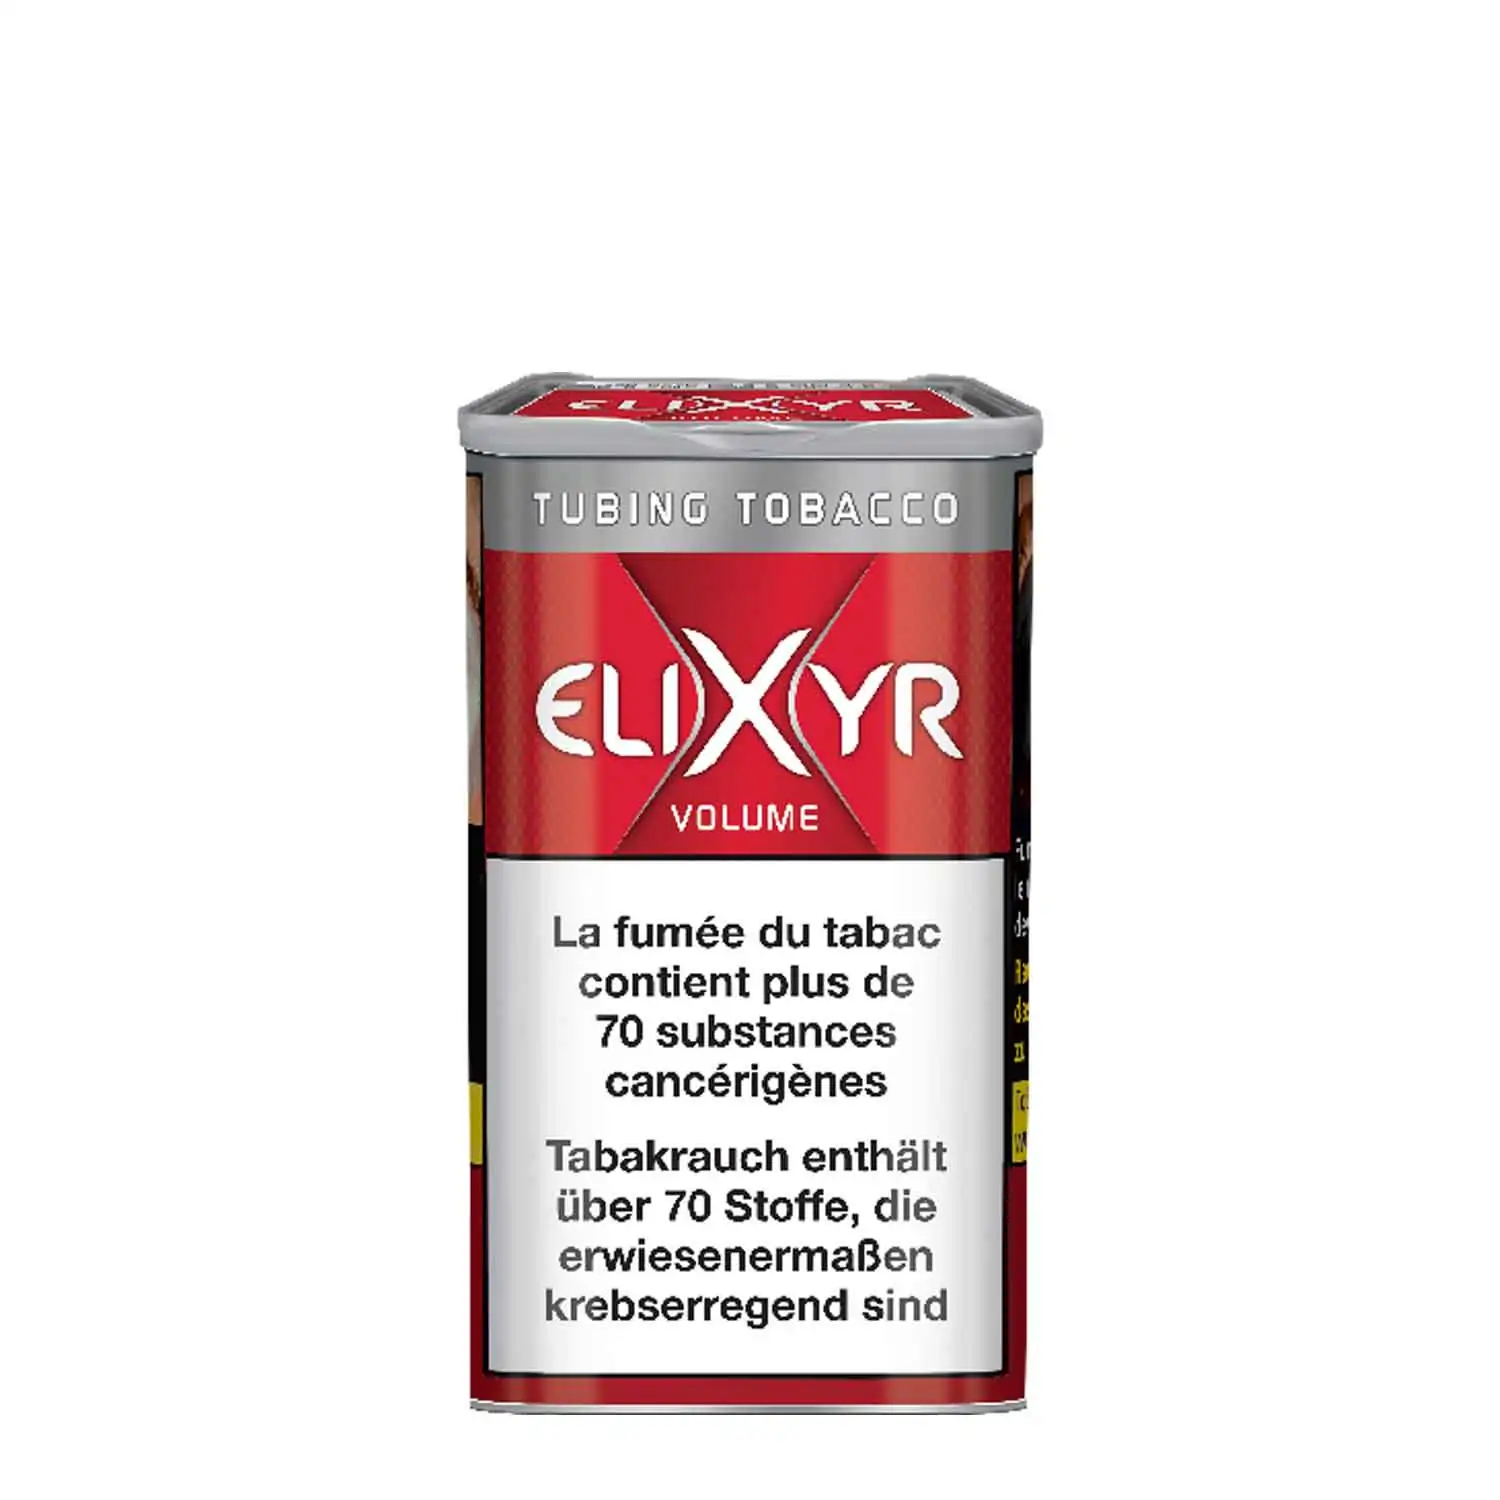 Elixyr volume maxx 80g - Buy at Real Tobacco